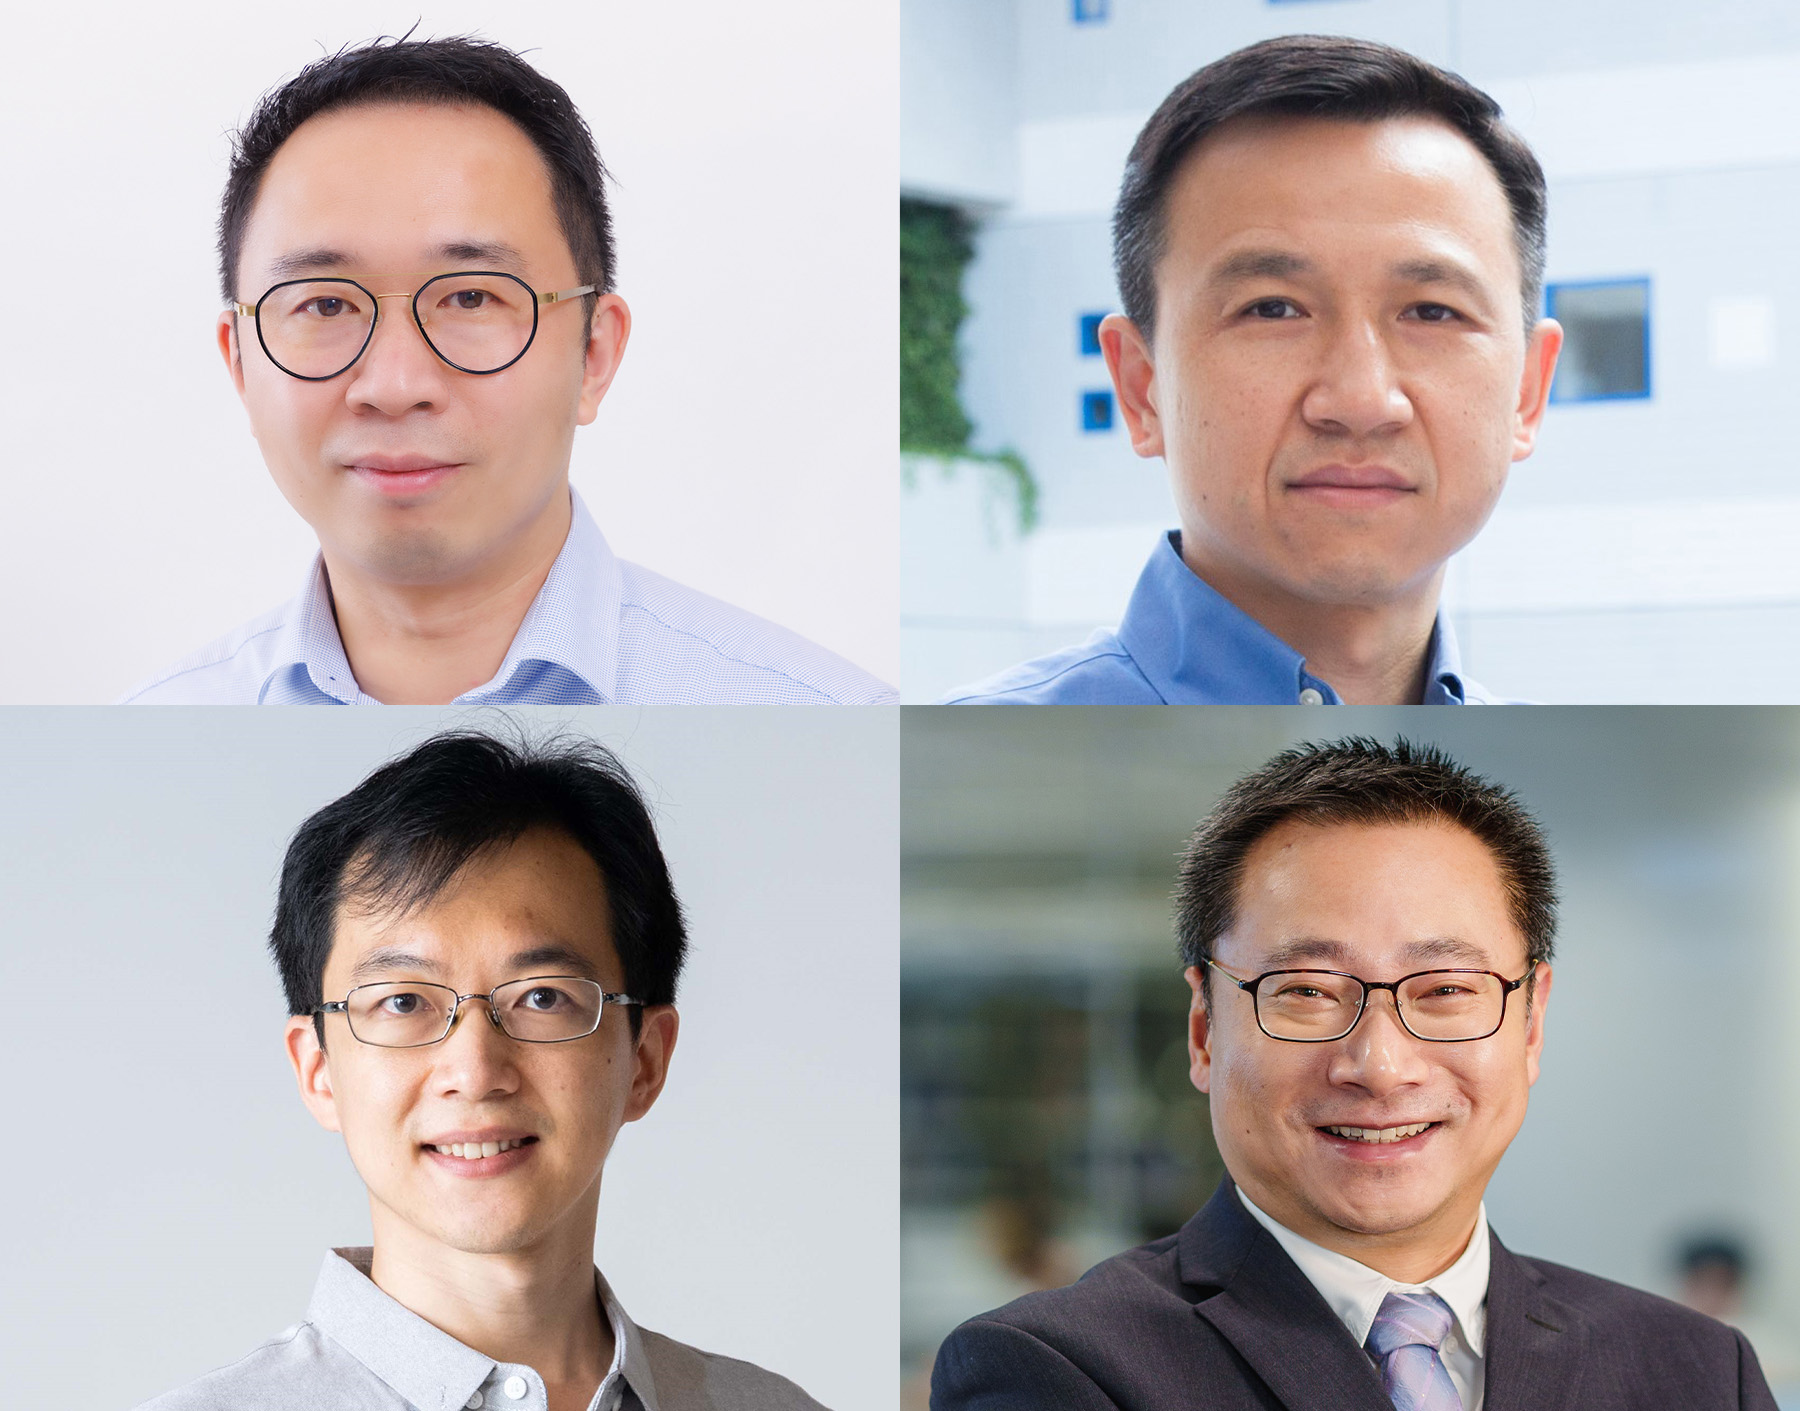 四名獲選本年度「研資局研究學者」的科大學者為：張曉東教授（左上），劉凱教授（右上）、王一教授（左下），及朱鵬宇教授（右下）。